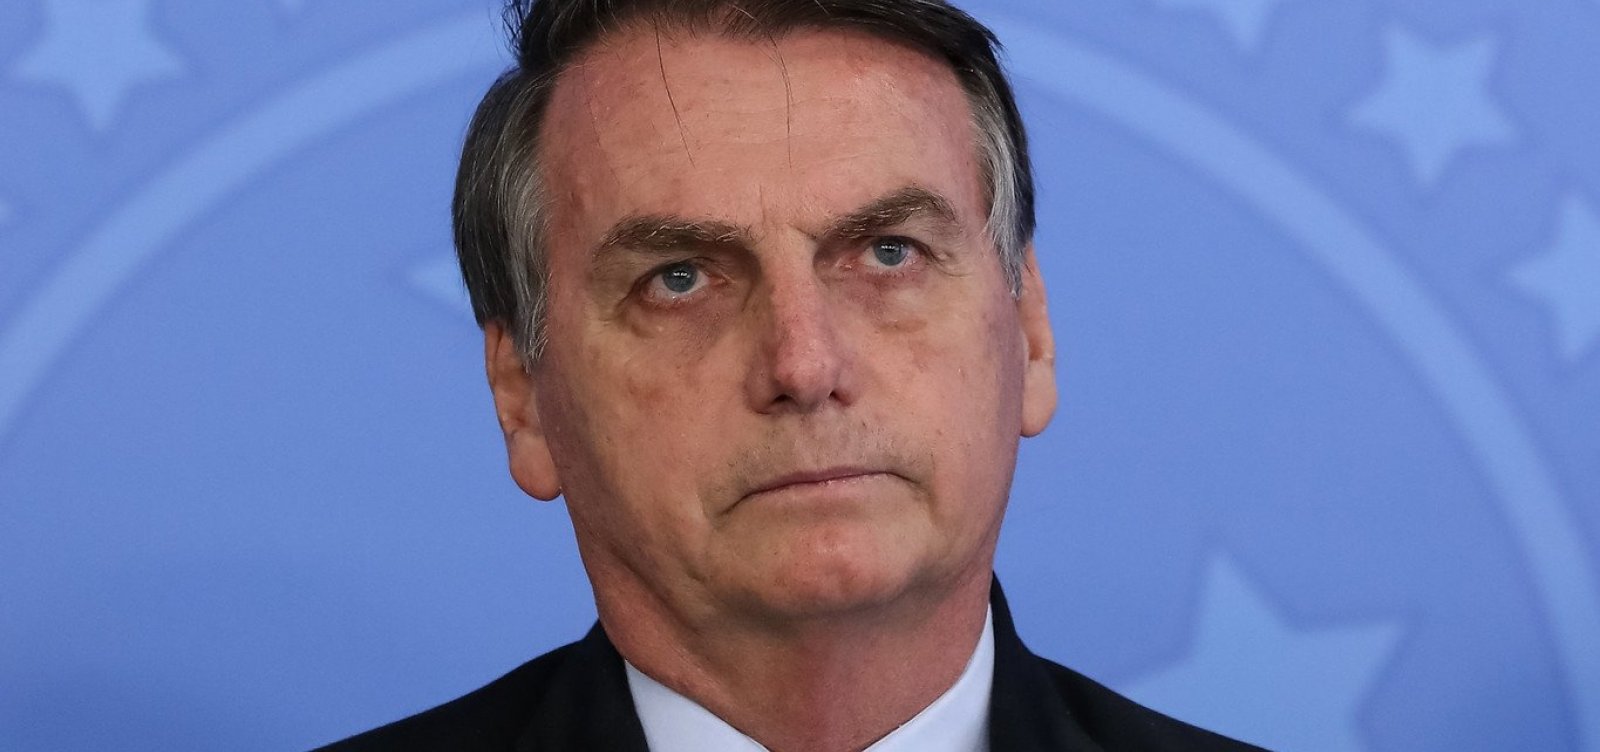 Se houve grampo 'é uma desonestidade', diz Bolsonaro sobre áudio